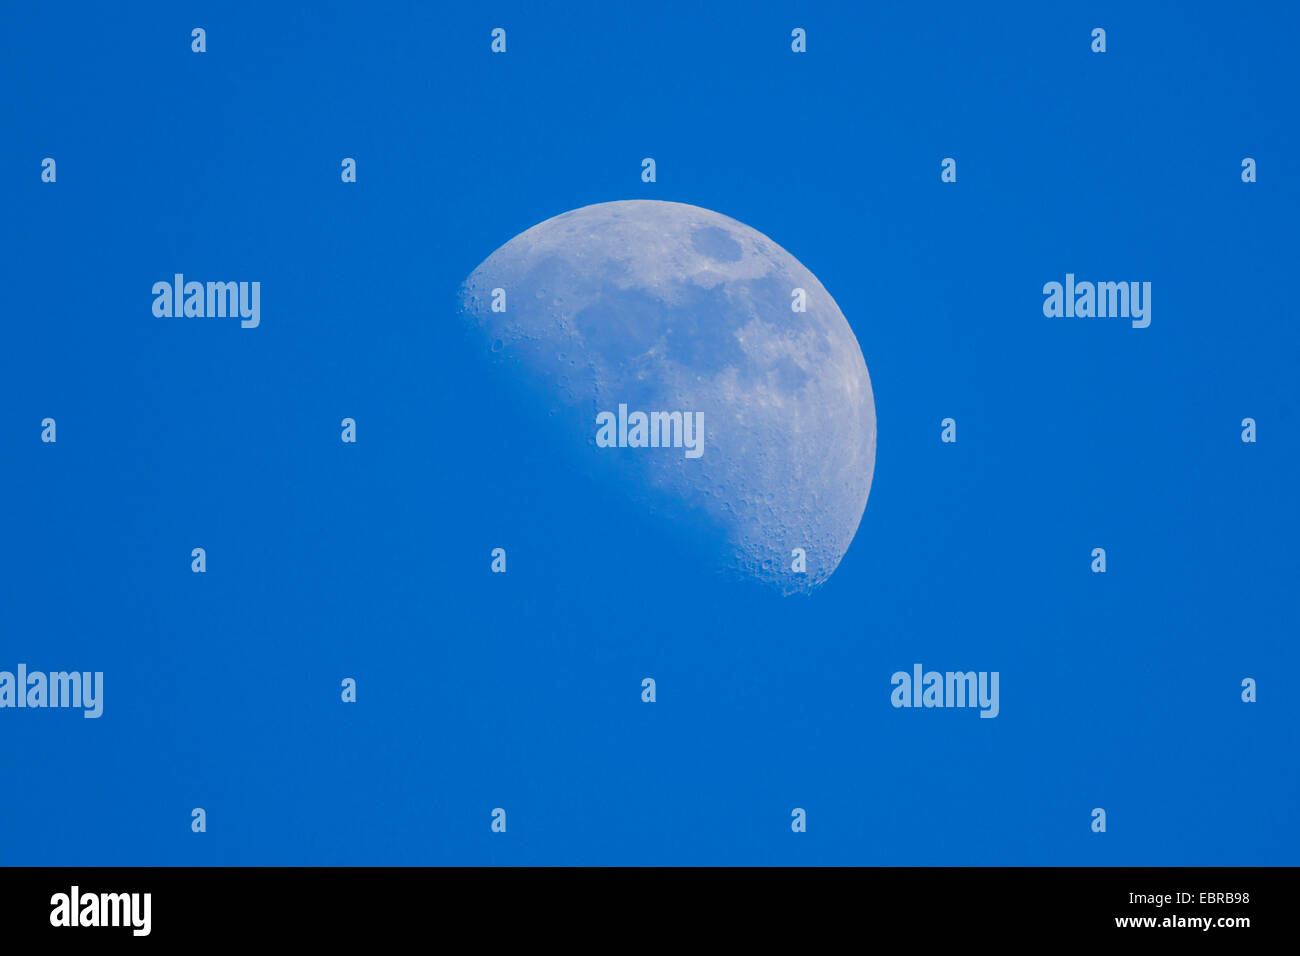 blue sky and waxing moon, Germany, Bavaria Stock Photo